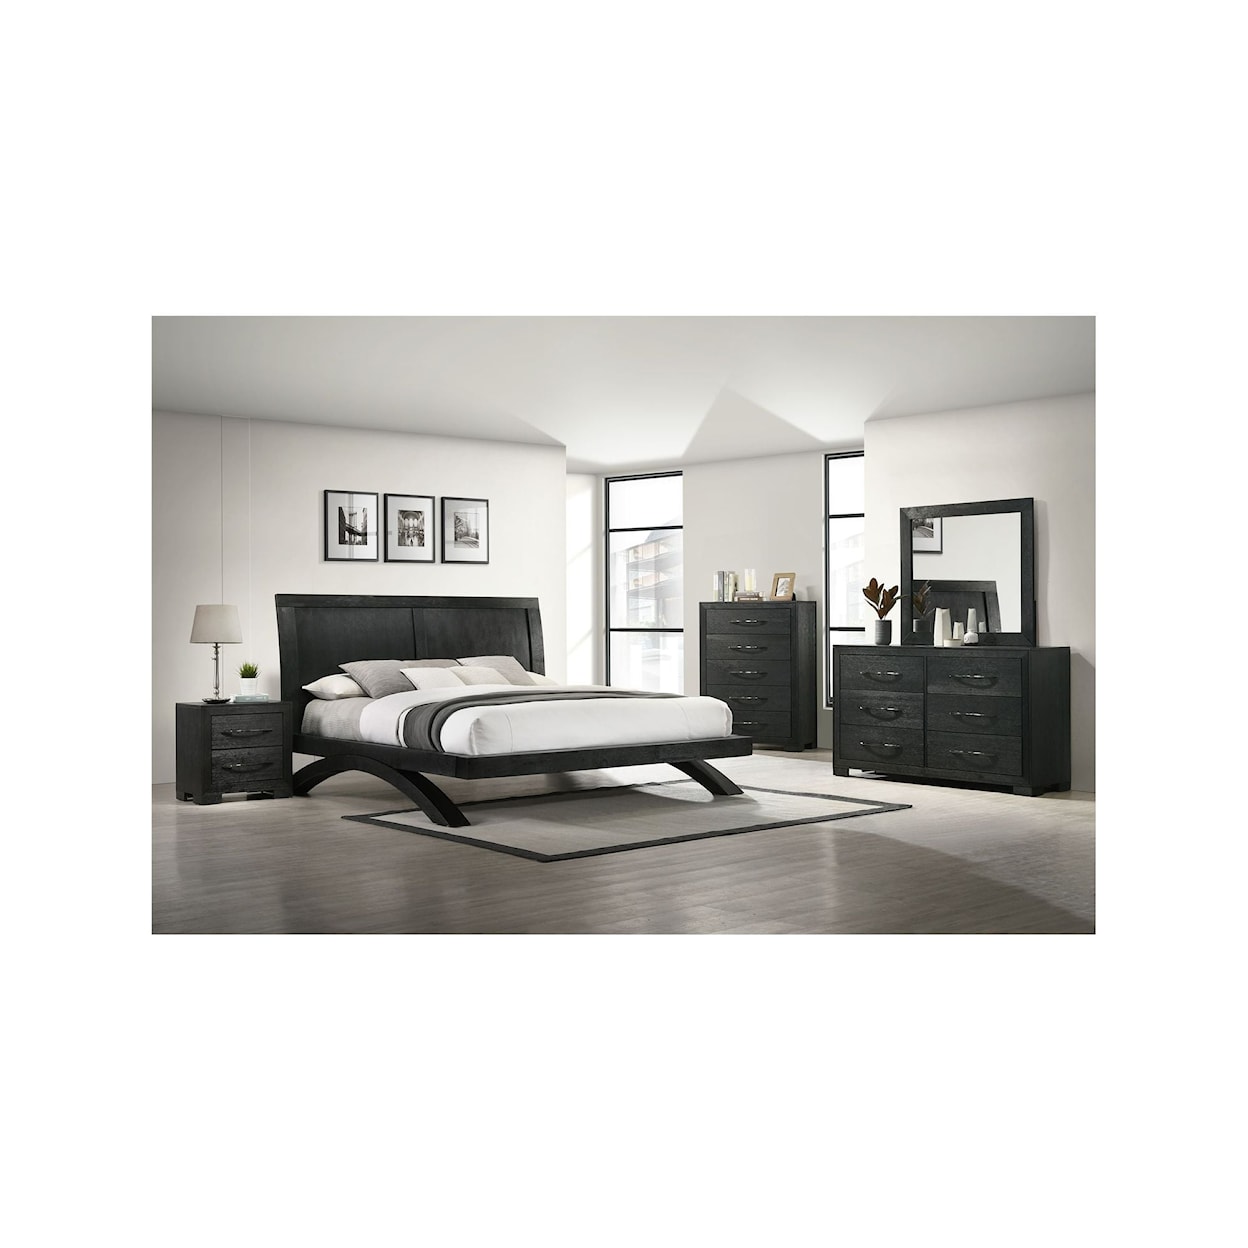 Elements International Allan Queen Panel 5Pc Bedroom Set In Black